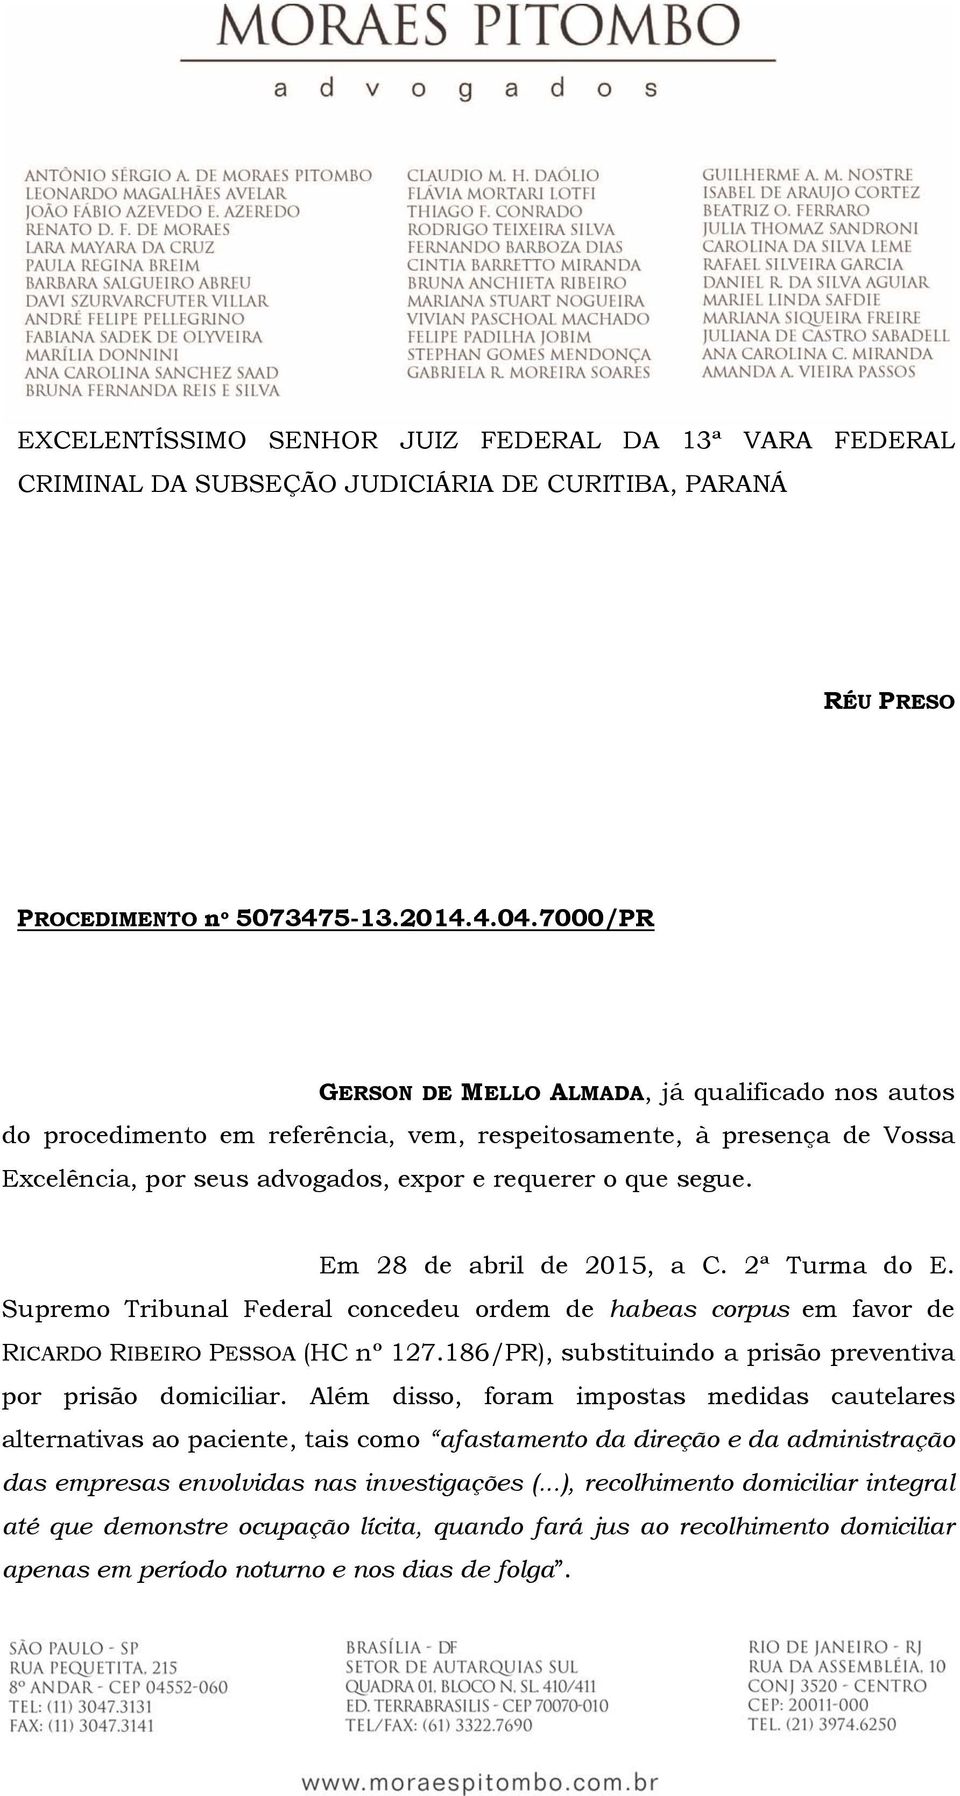 Em 28 de abril de 2015, a C. 2ª Turma do E. Supremo Tribunal Federal concedeu ordem de habeas corpus em favor de RICARDO RIBEIRO PESSOA (HC nº 127.